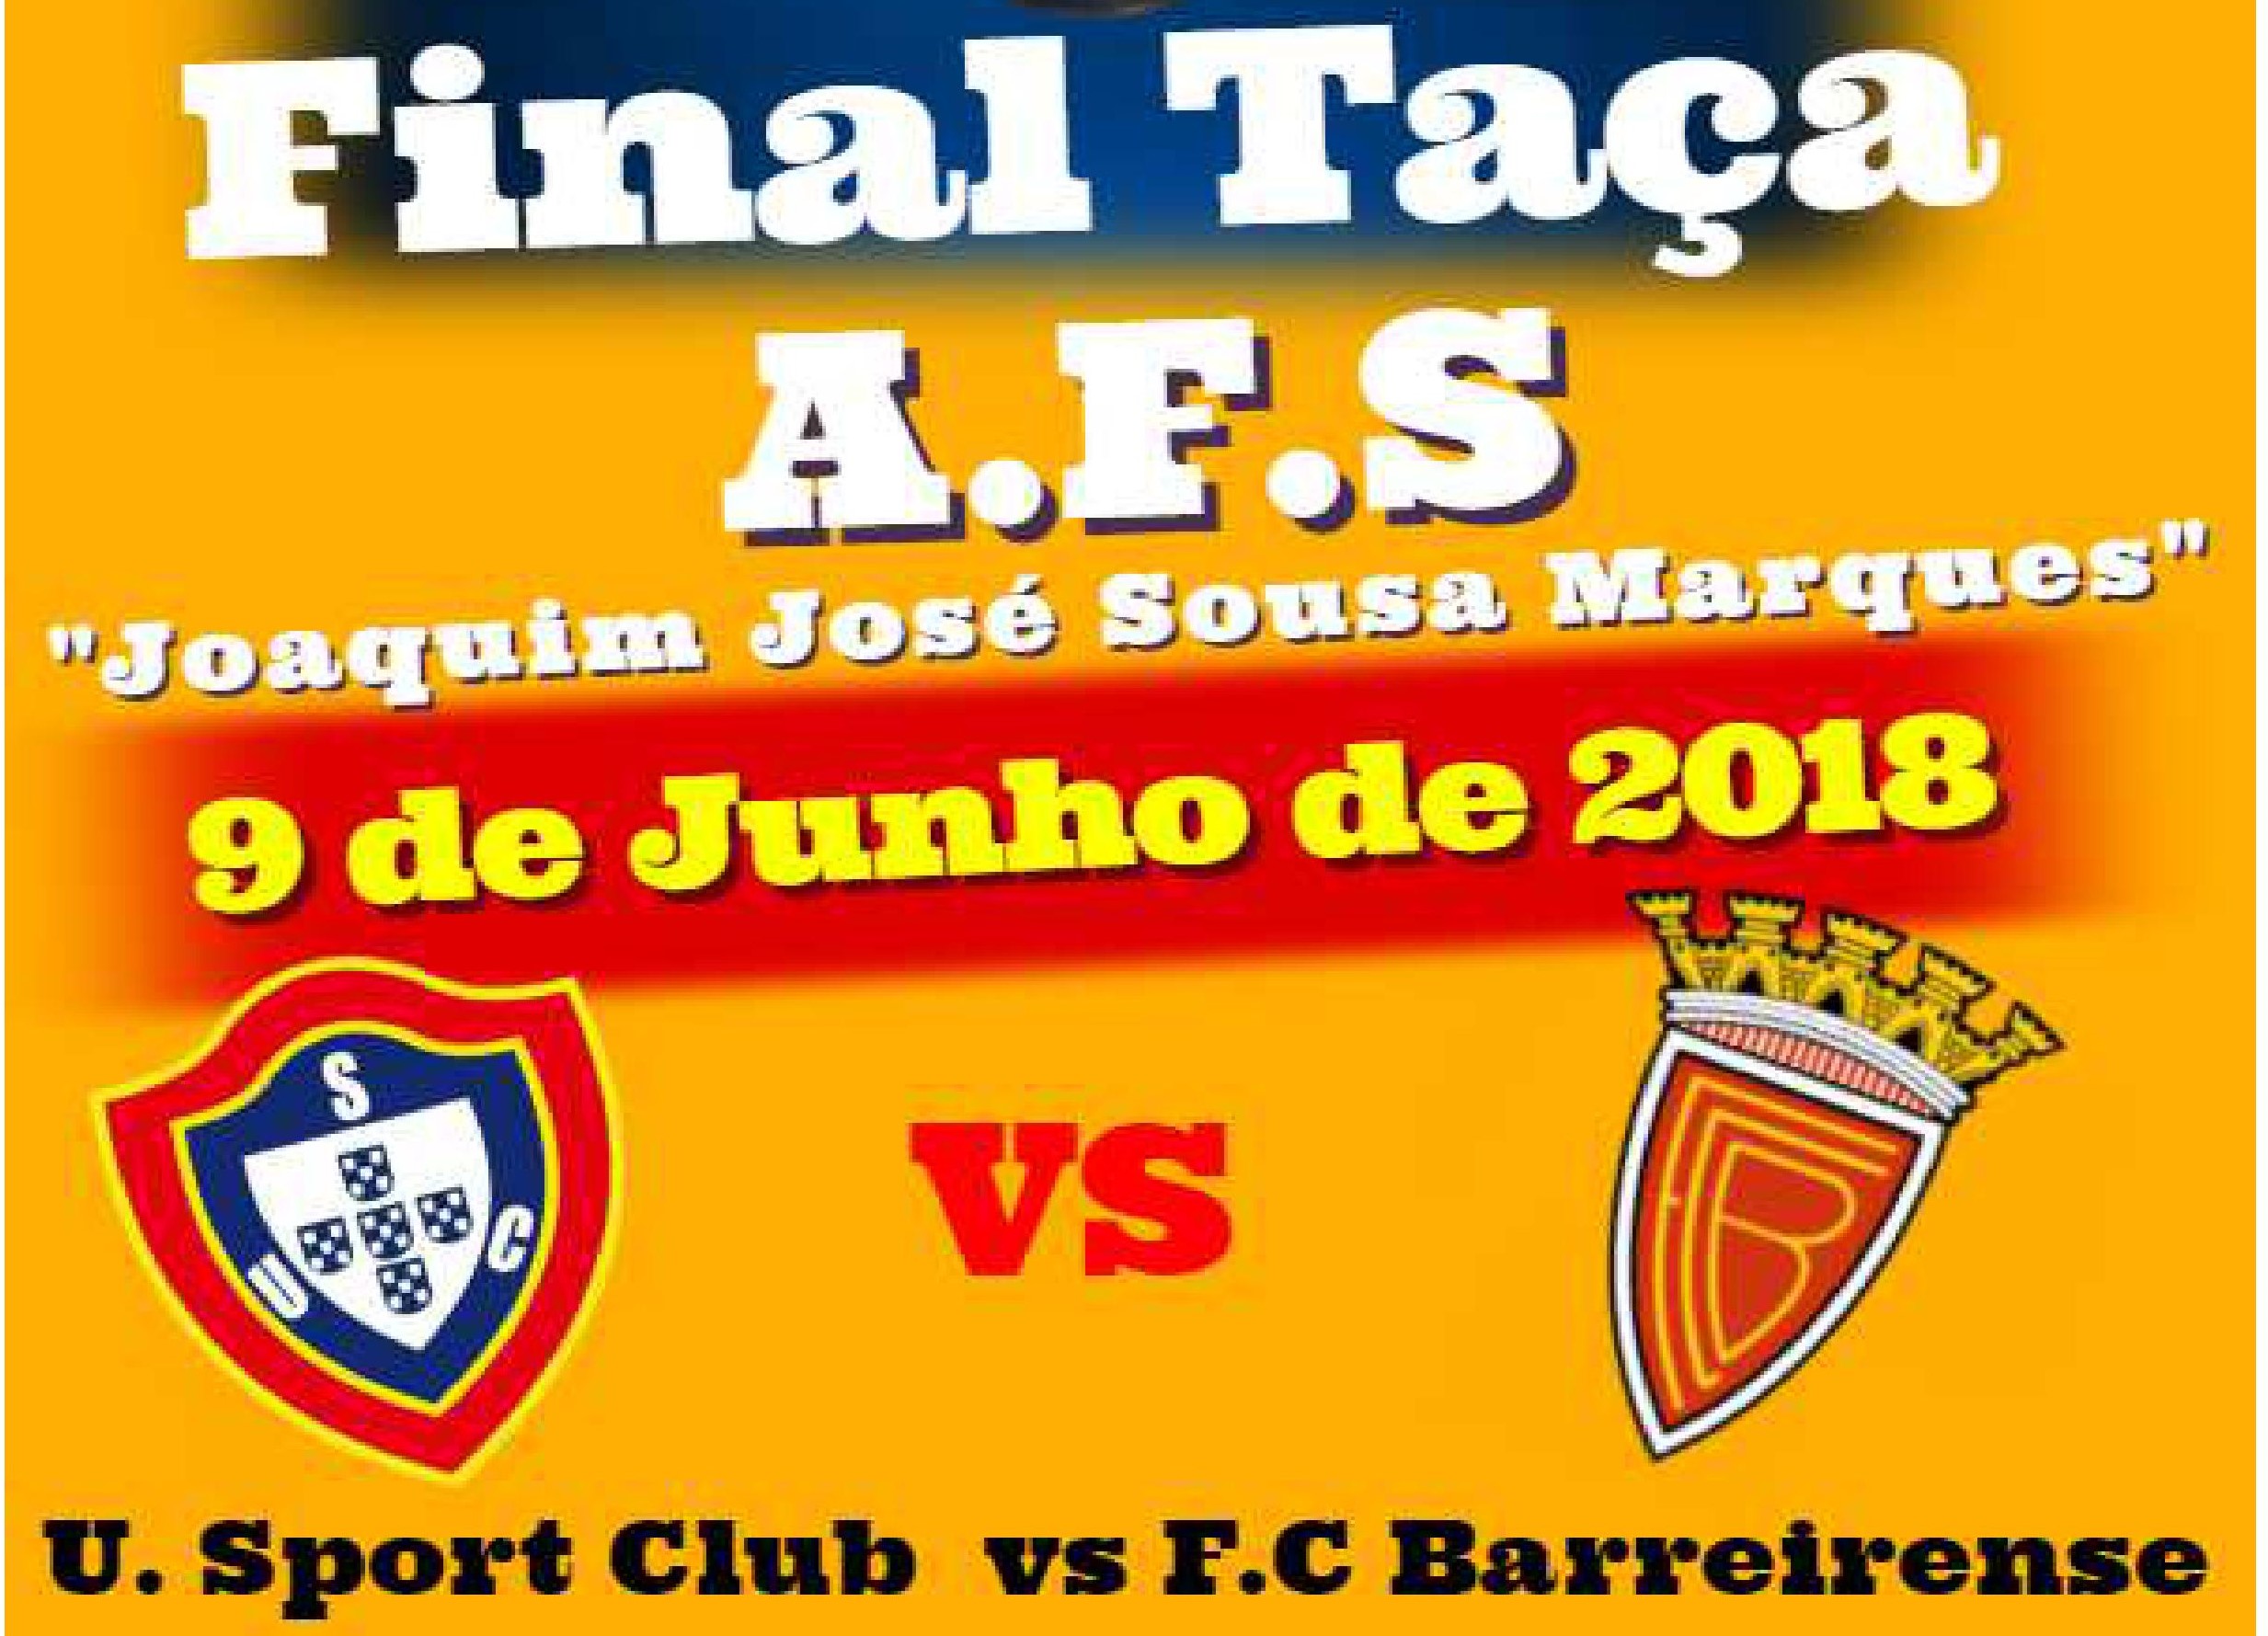 Informações sobre bilhética e acessos livres para a final da Taça AFS "Joaquim José Sousa Marques" 